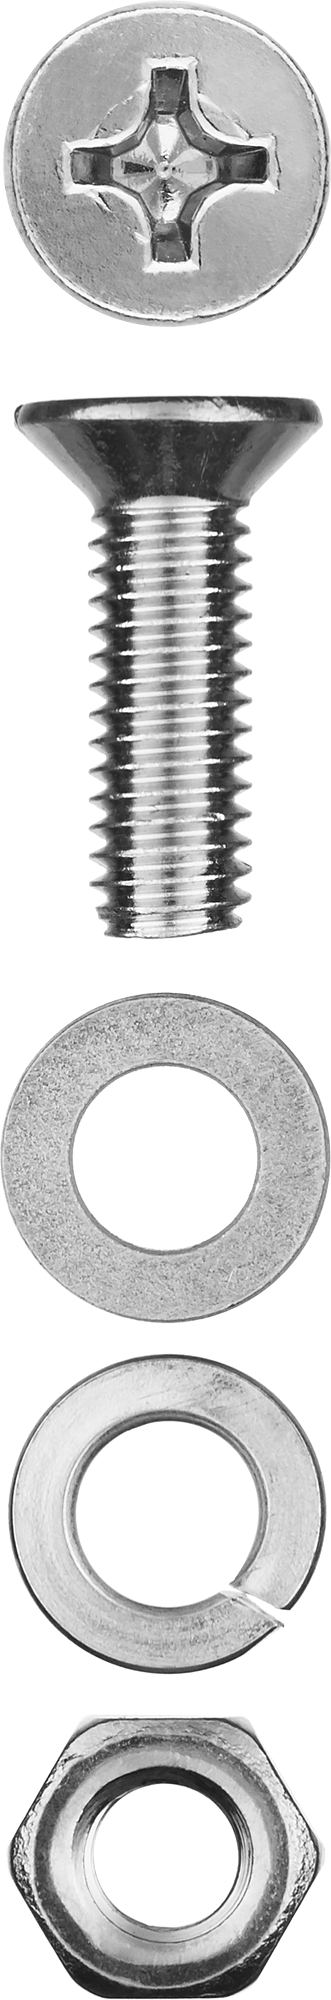 Винт (DIN965) с потайной головкой в комплекте с гайкой (DIN934), шайбой (DIN125), шайбой пруж. (DIN127) Зубр 303456-06-016, М6, 1.6 см, 965 DIN, 6 мм, оцинкованная сталь, 12 шт., фасовка (303456-06-016)